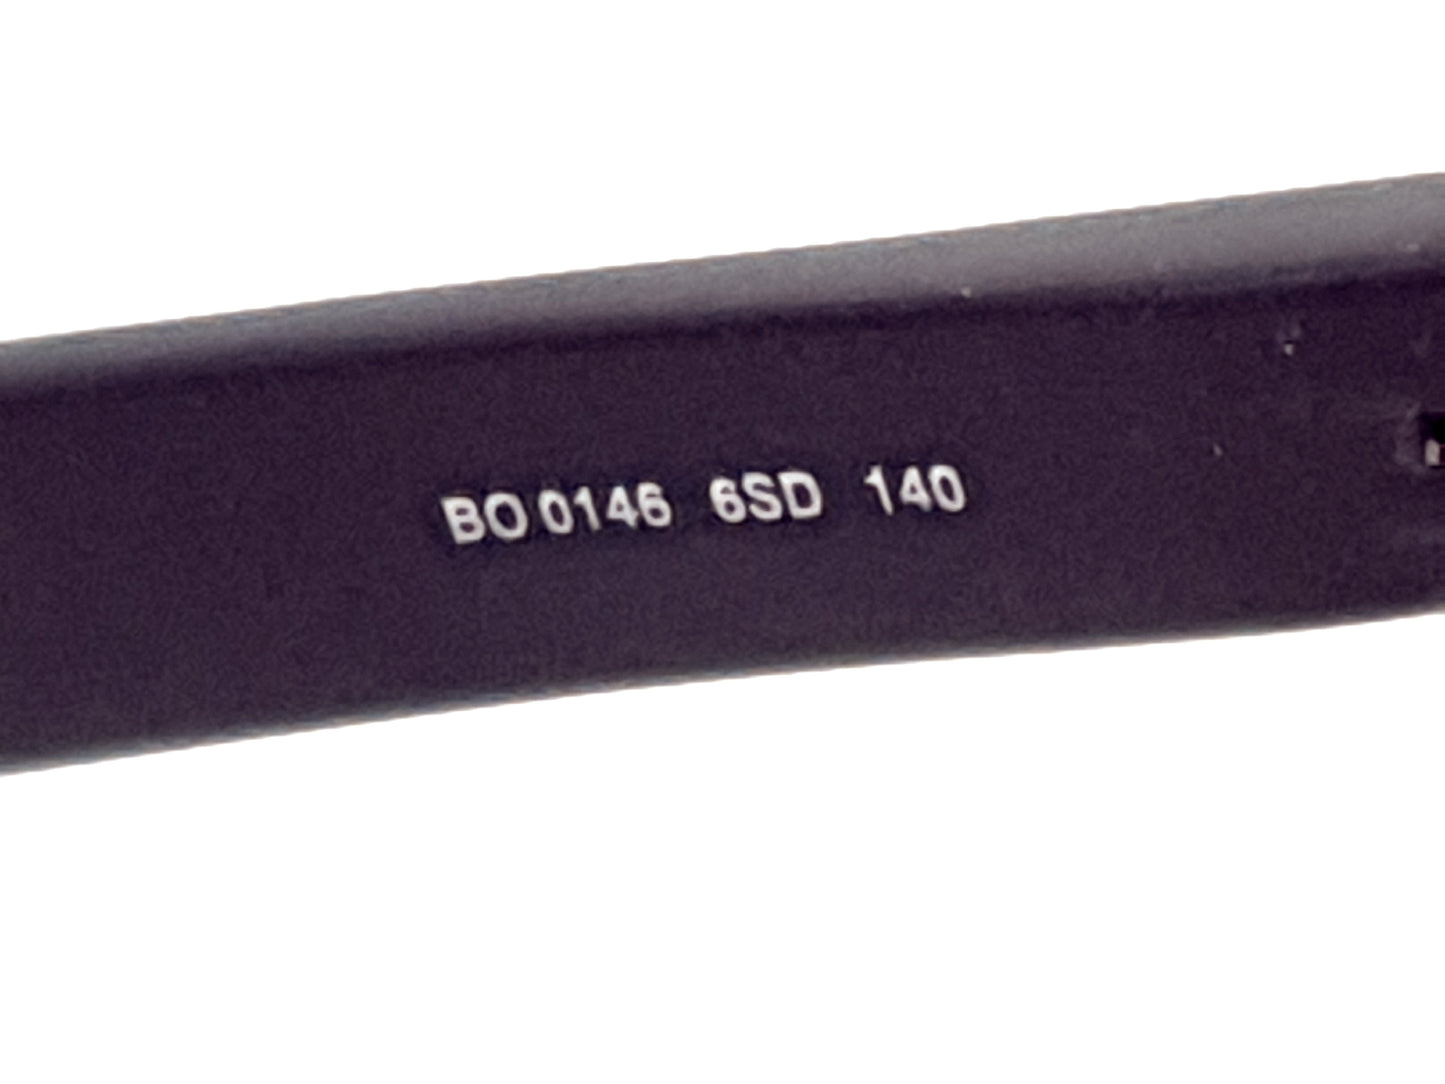 Hugo Boss BO0146